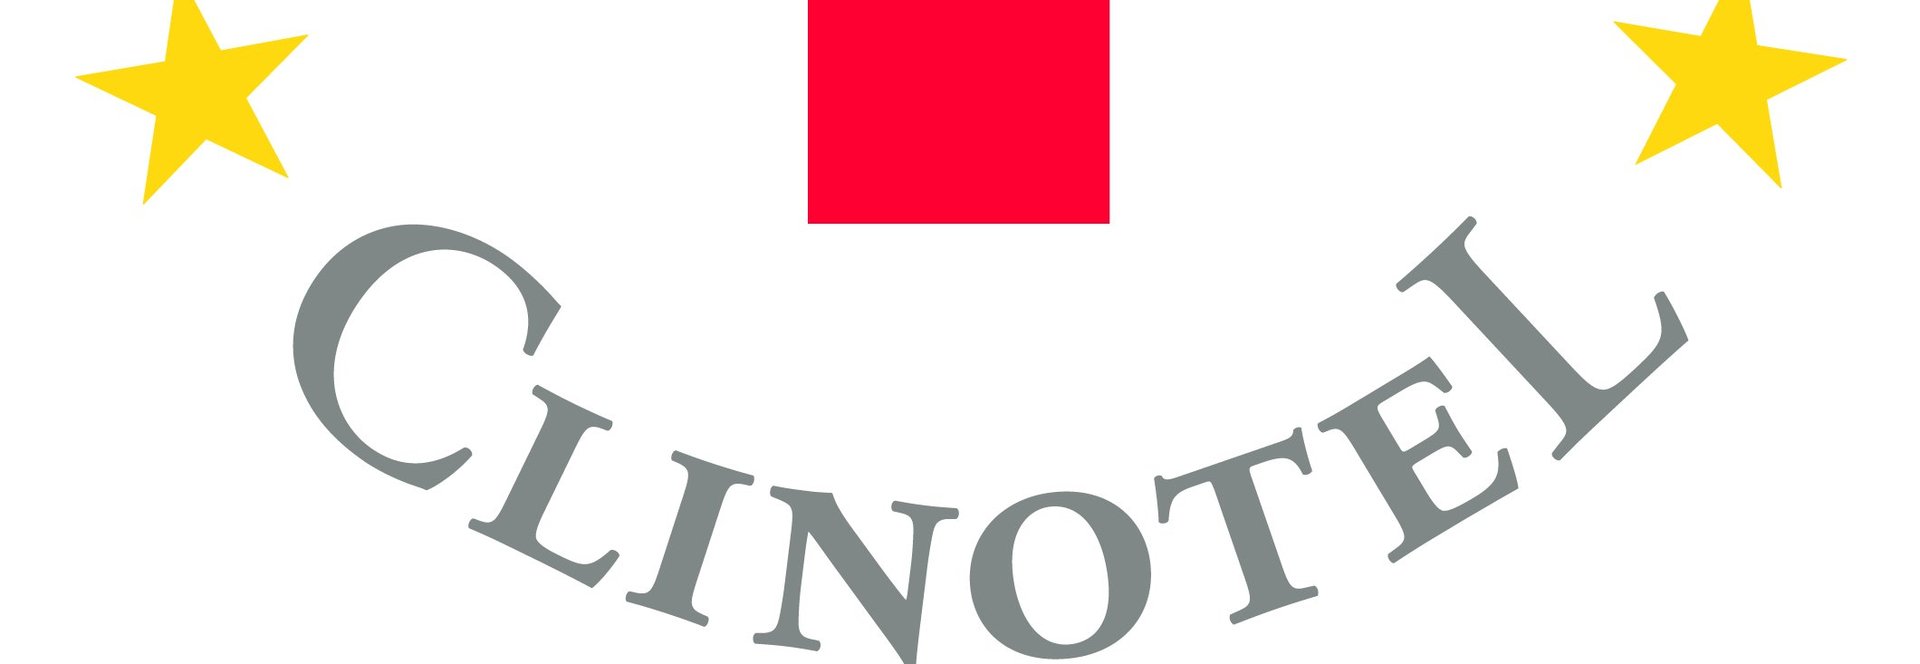 Clinotel Logo